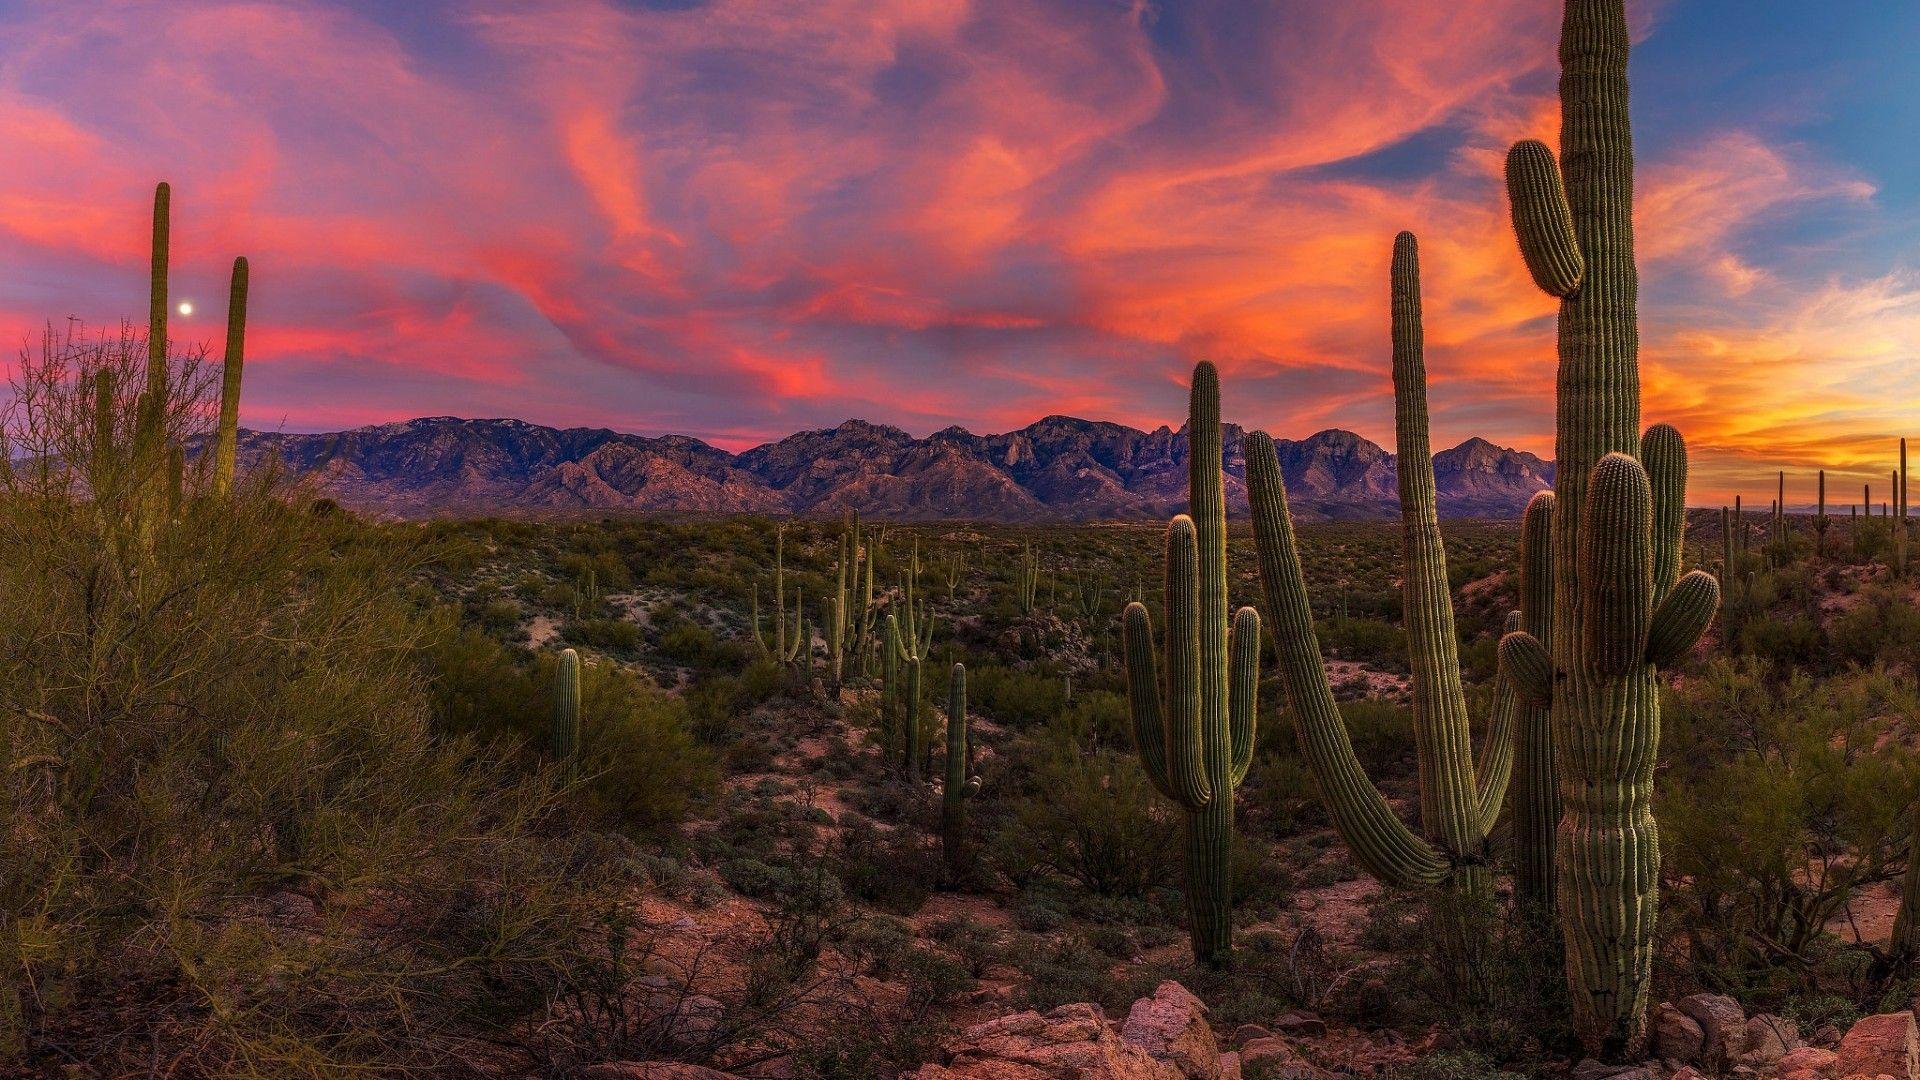 Saguaro Cactus In The Sonoran Desert At Sunset Wallpaper